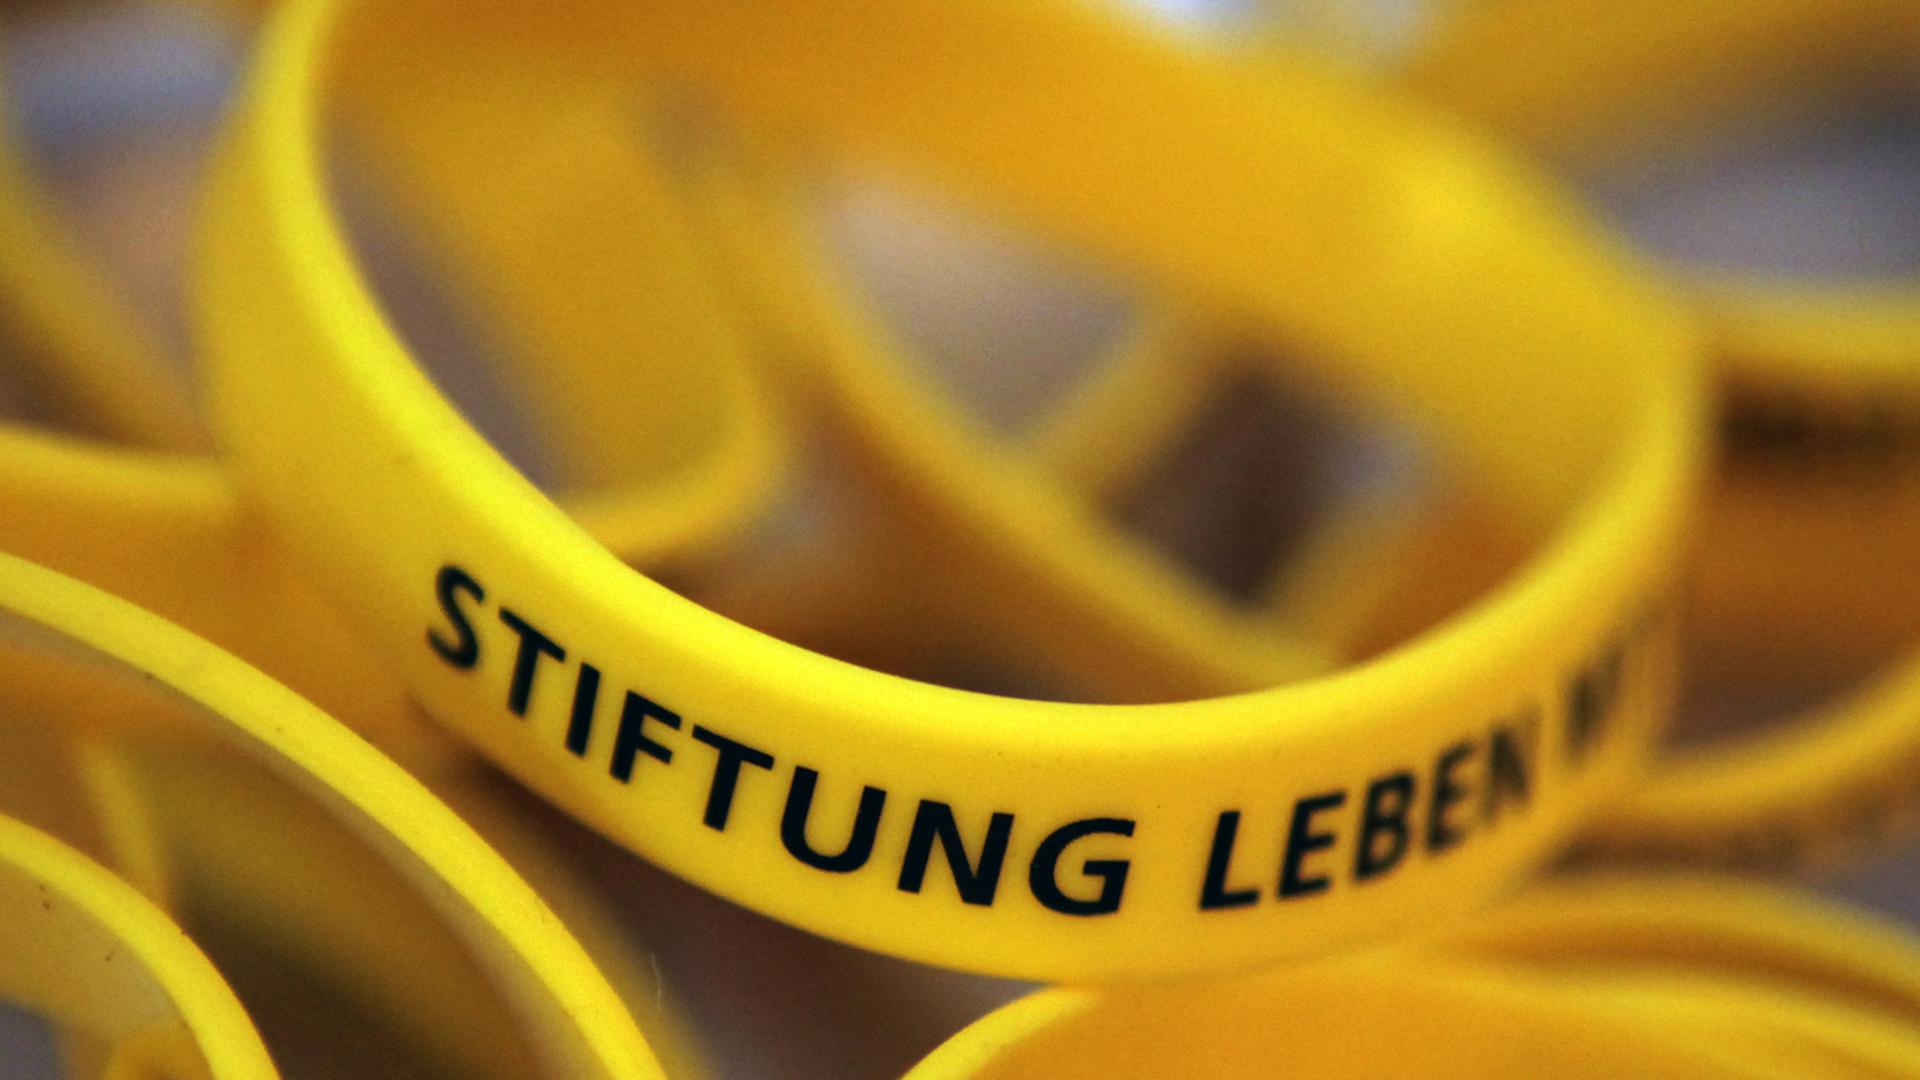 Gelbe Gummiarmbänder mit der schwarzen Aufschrift "Stiftung Leben"